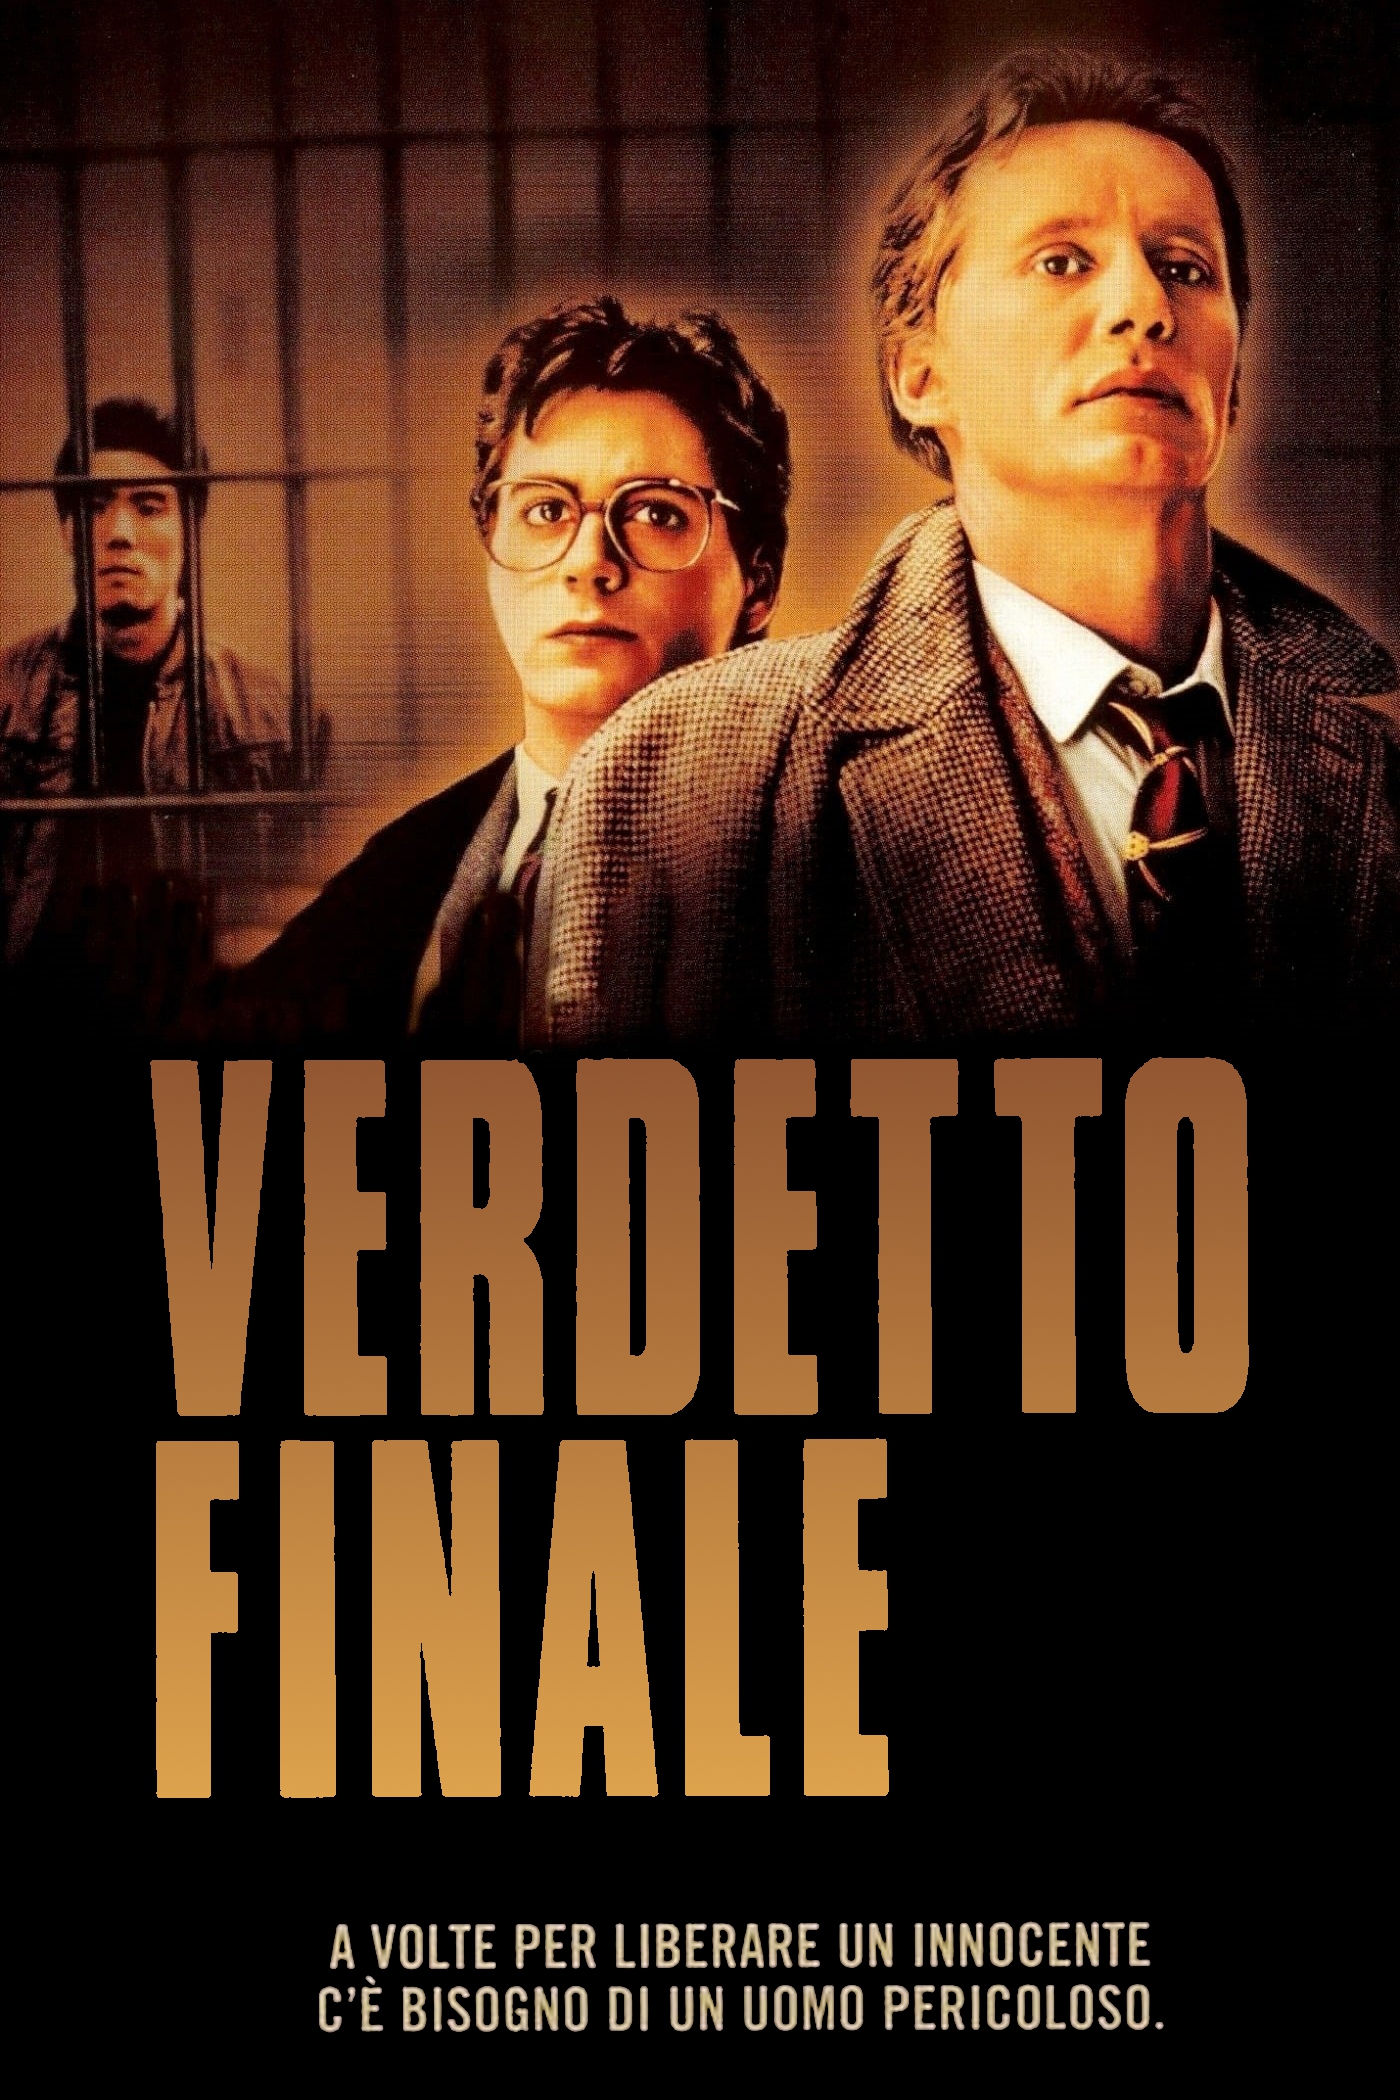 Verdetto finale [HD] (1989)